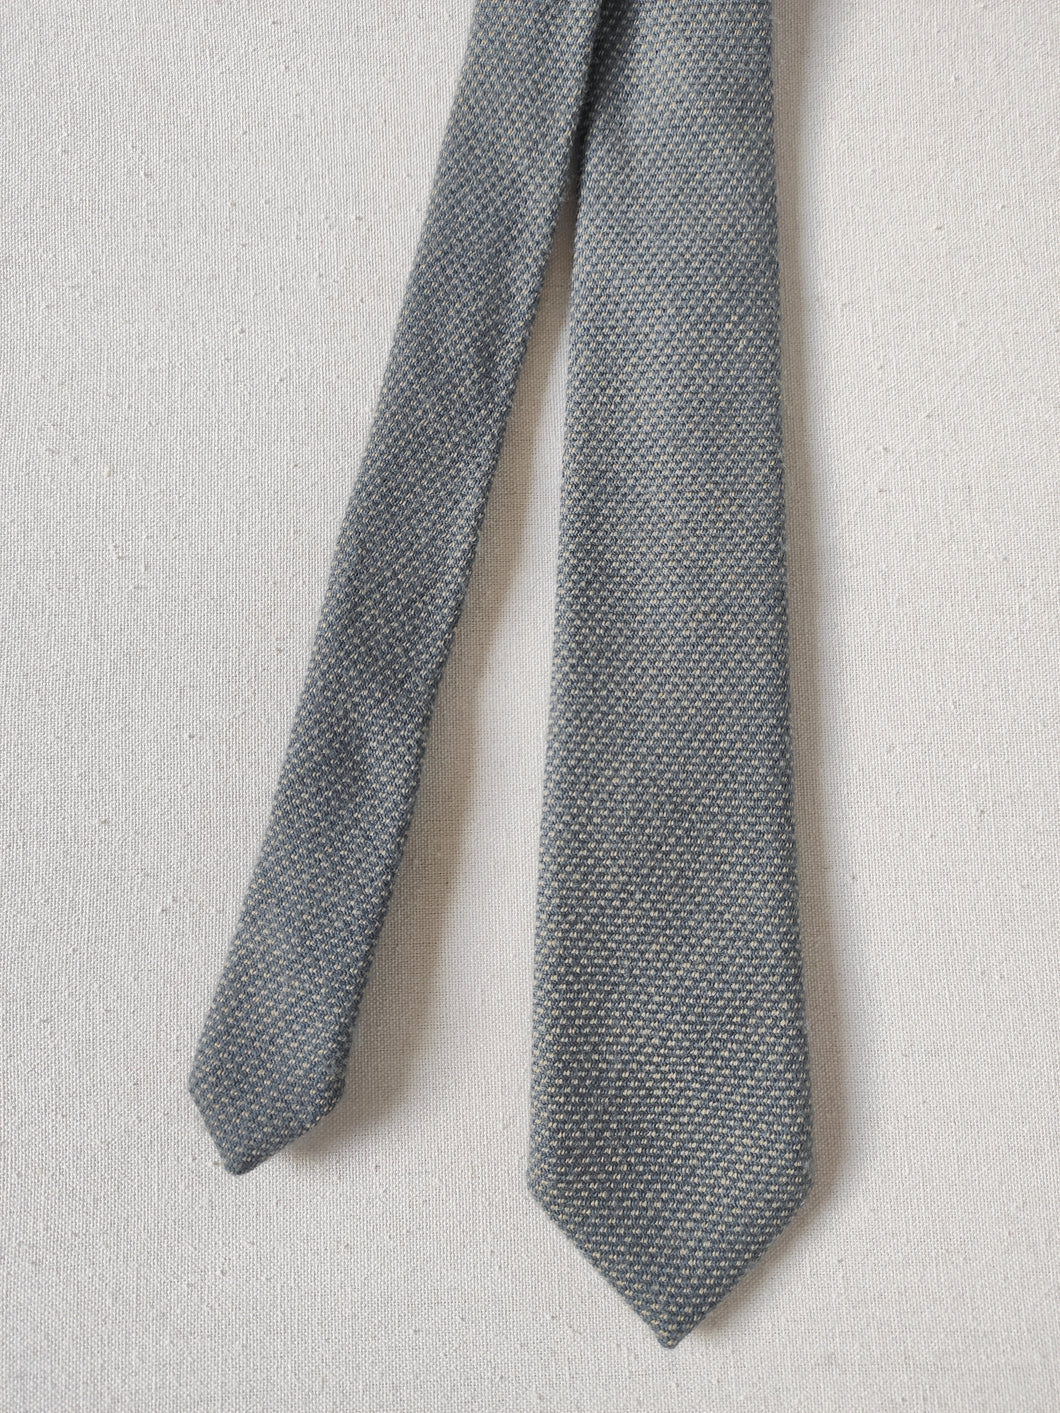 Stuart Turner & Co cravate vintage en pure laine